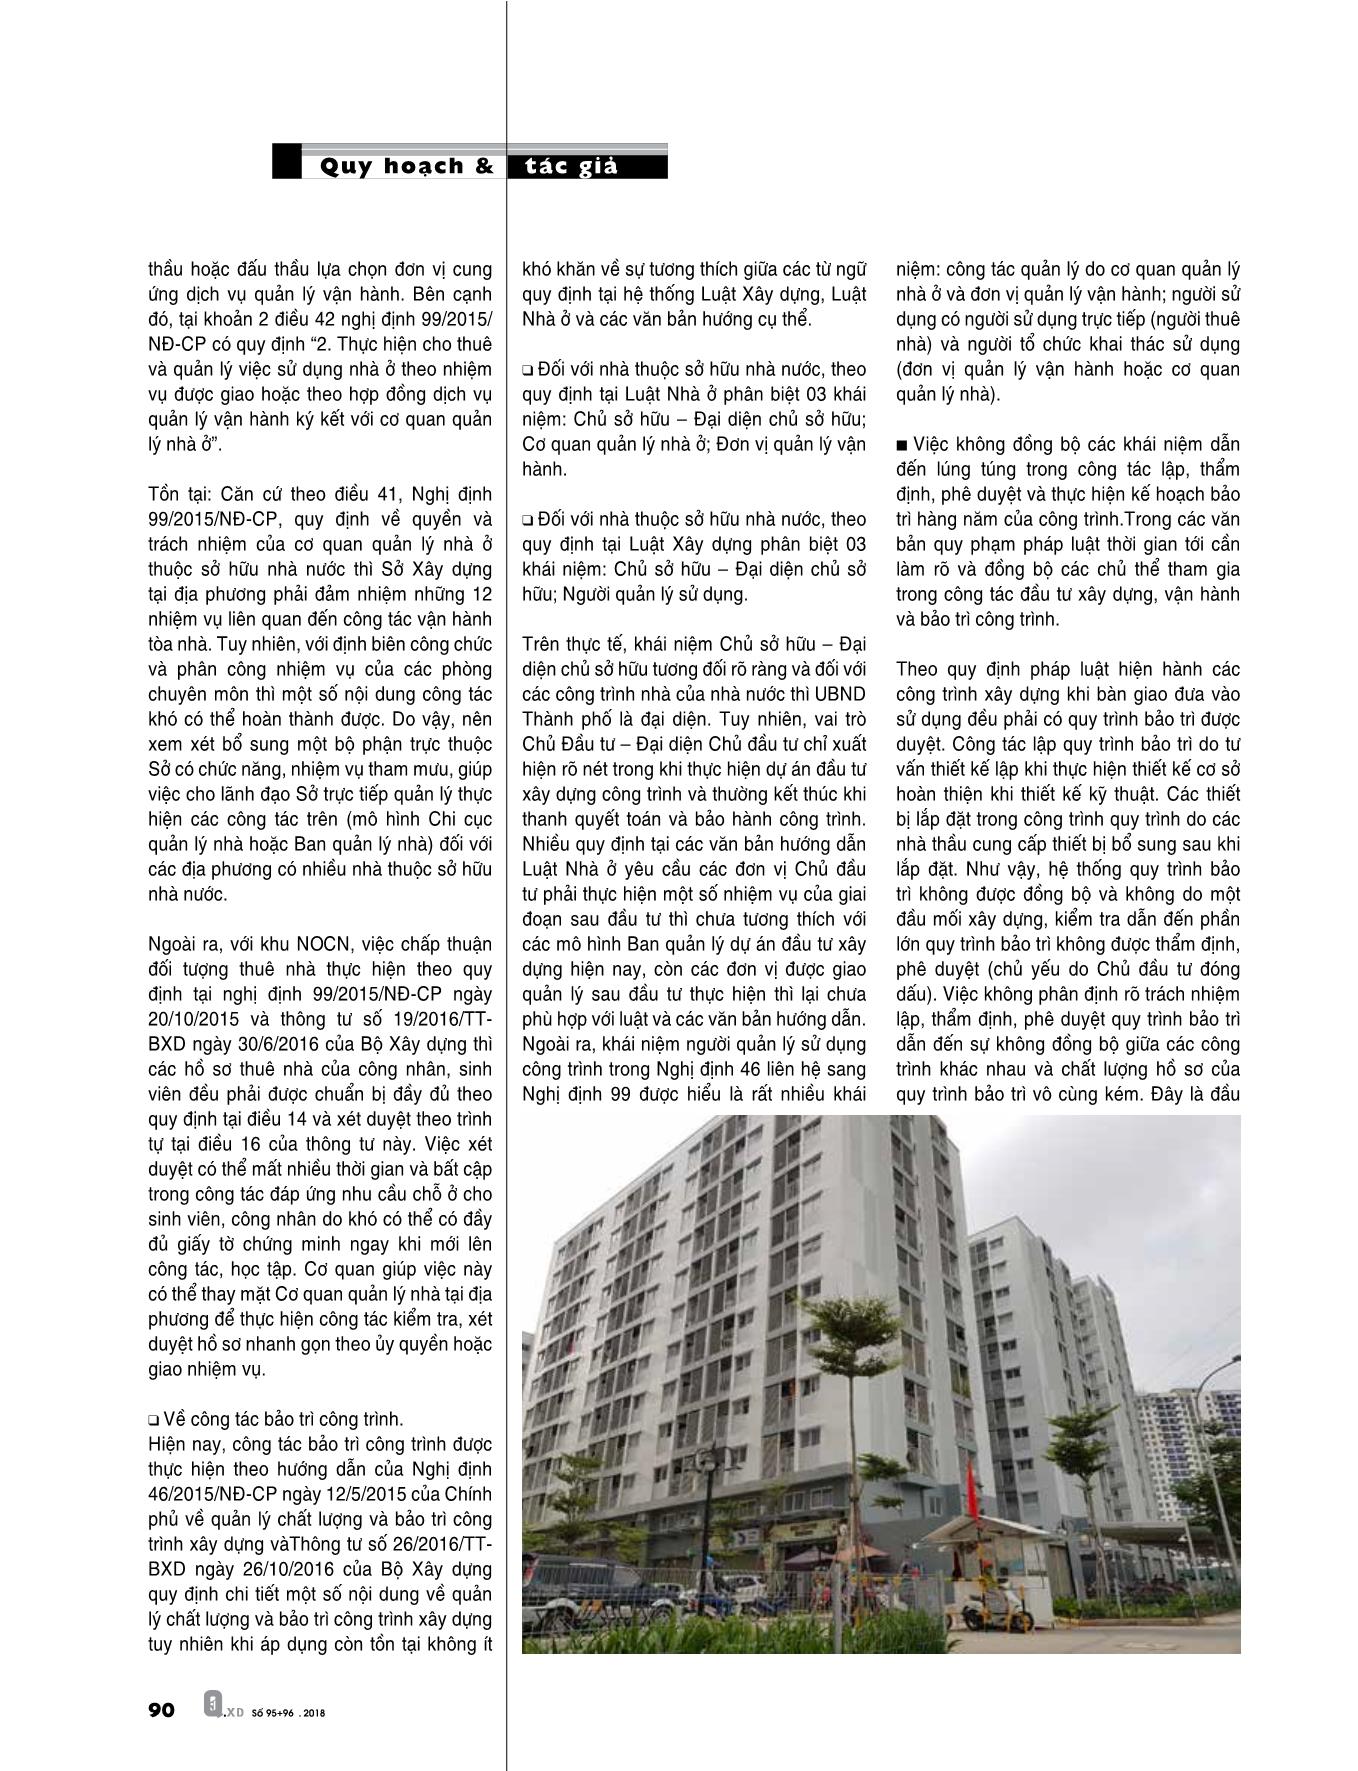 Thực trạng phát triển nhà ở xã hội cho thuê tại thành phố Hà Nội trang 9